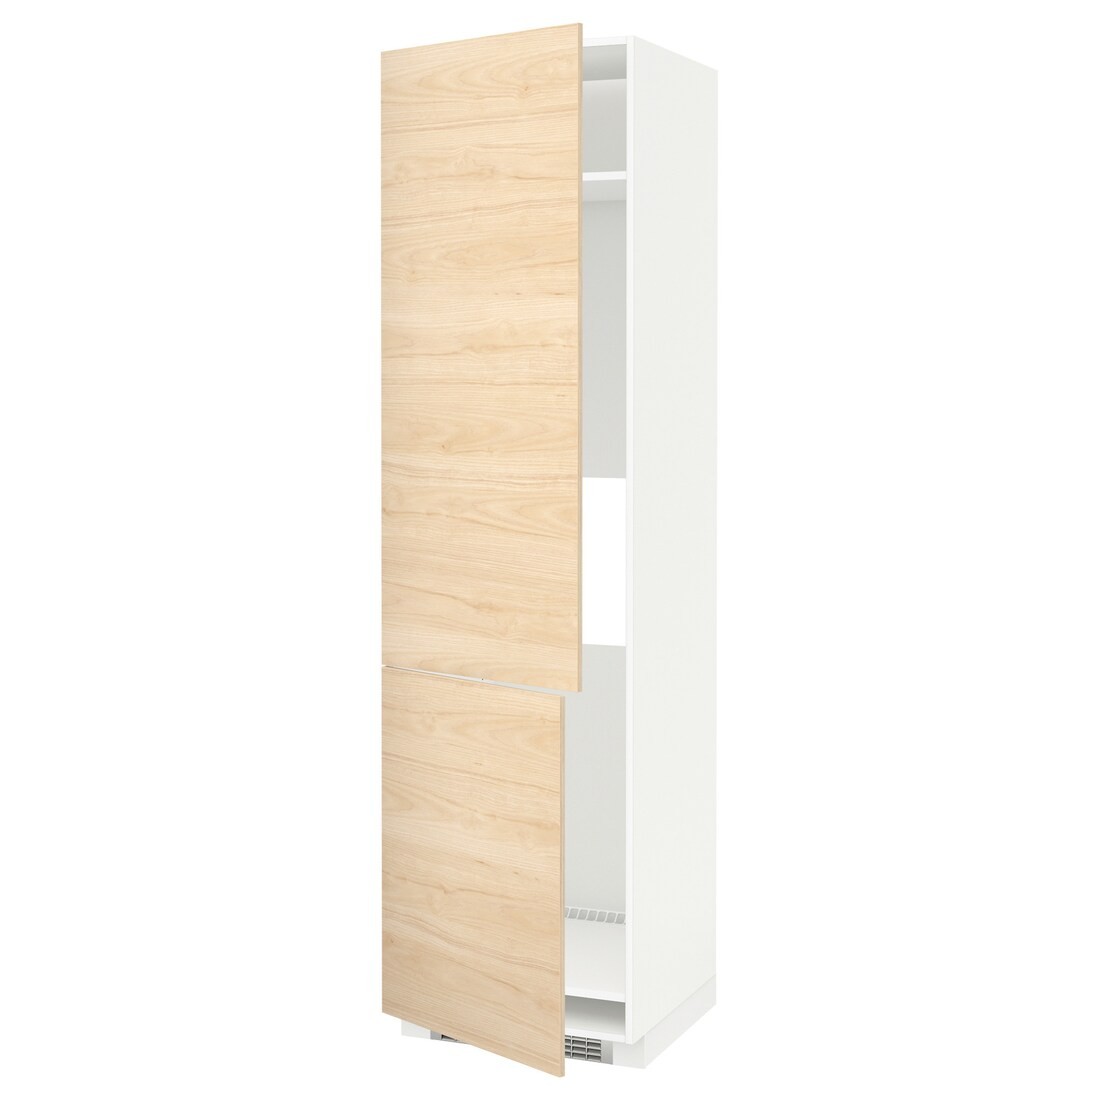 METOD МЕТОД Высокий шкаф для холодильника / морозильника / 2дверцы, белый / Askersund узор светлый ясень, 60x60x220 см